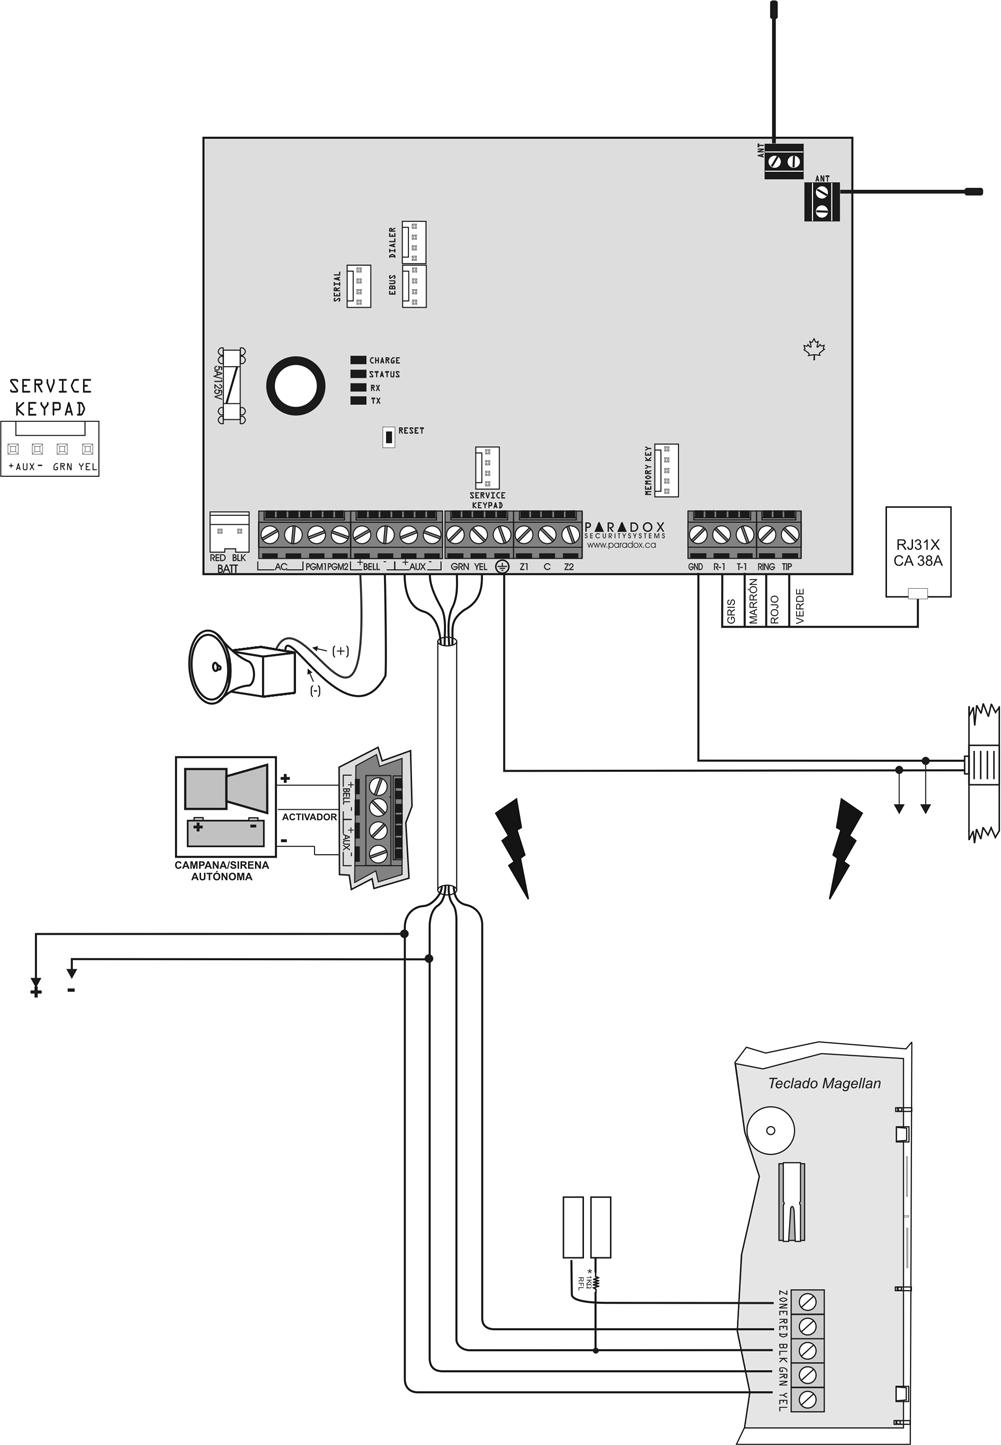 Diagrama de la Placa de Circuito Impreso del MG5000 Usado para la actualización local del firmware mediante una Interfaz de Conexión Directa 306USB.